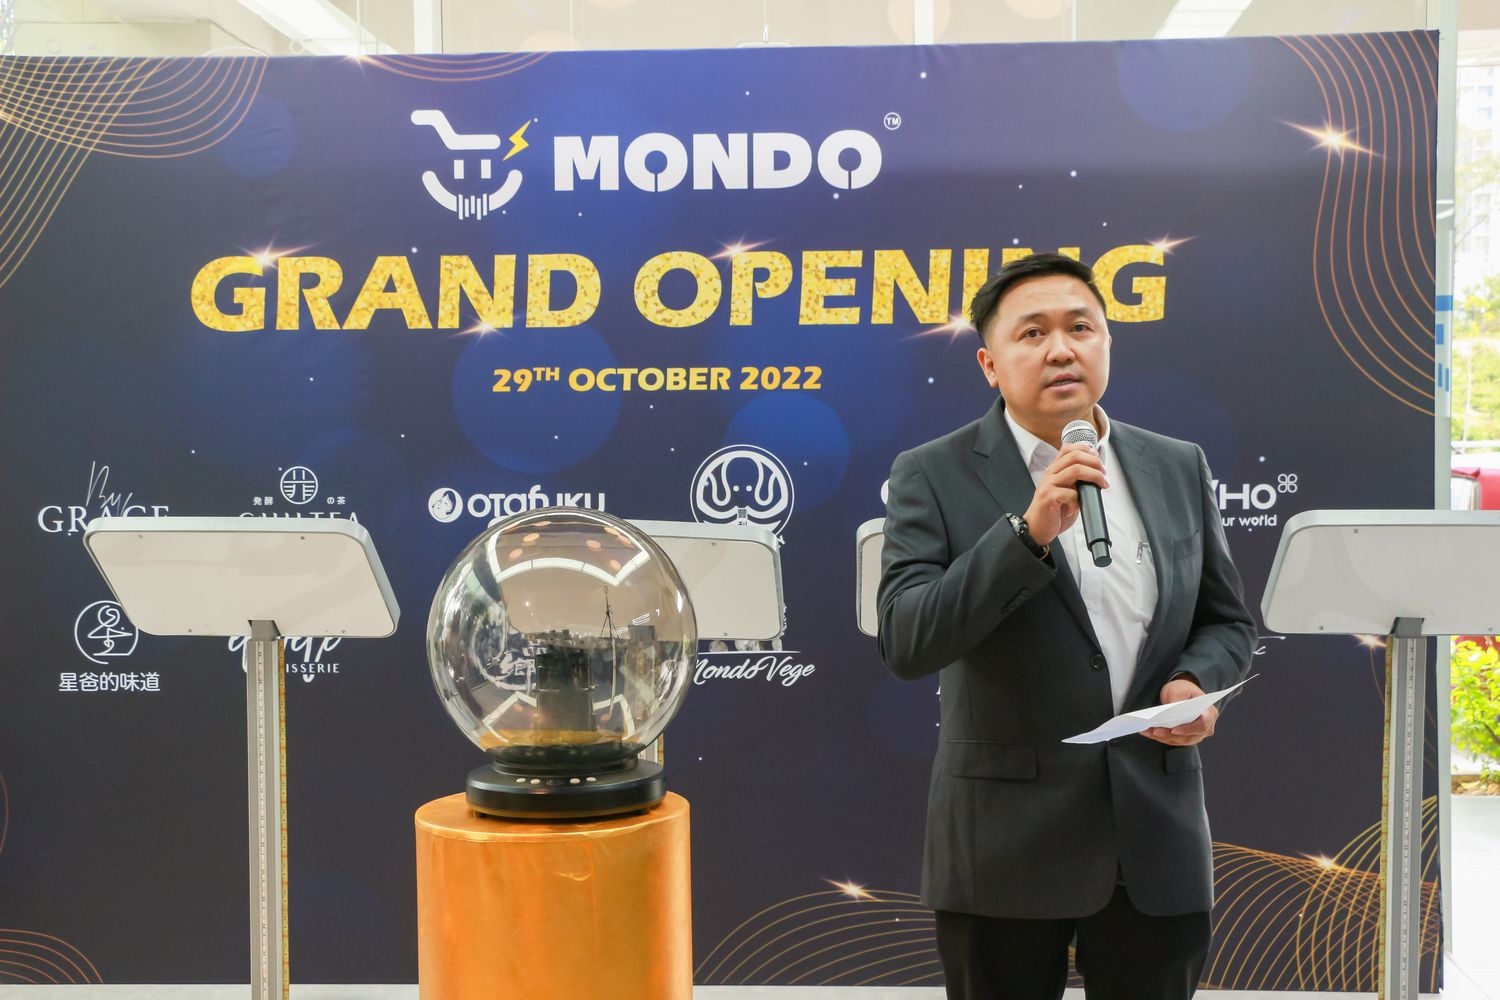 Mondo Smart Store Bukit Jalil Grand Opening on 29 Oct 2022